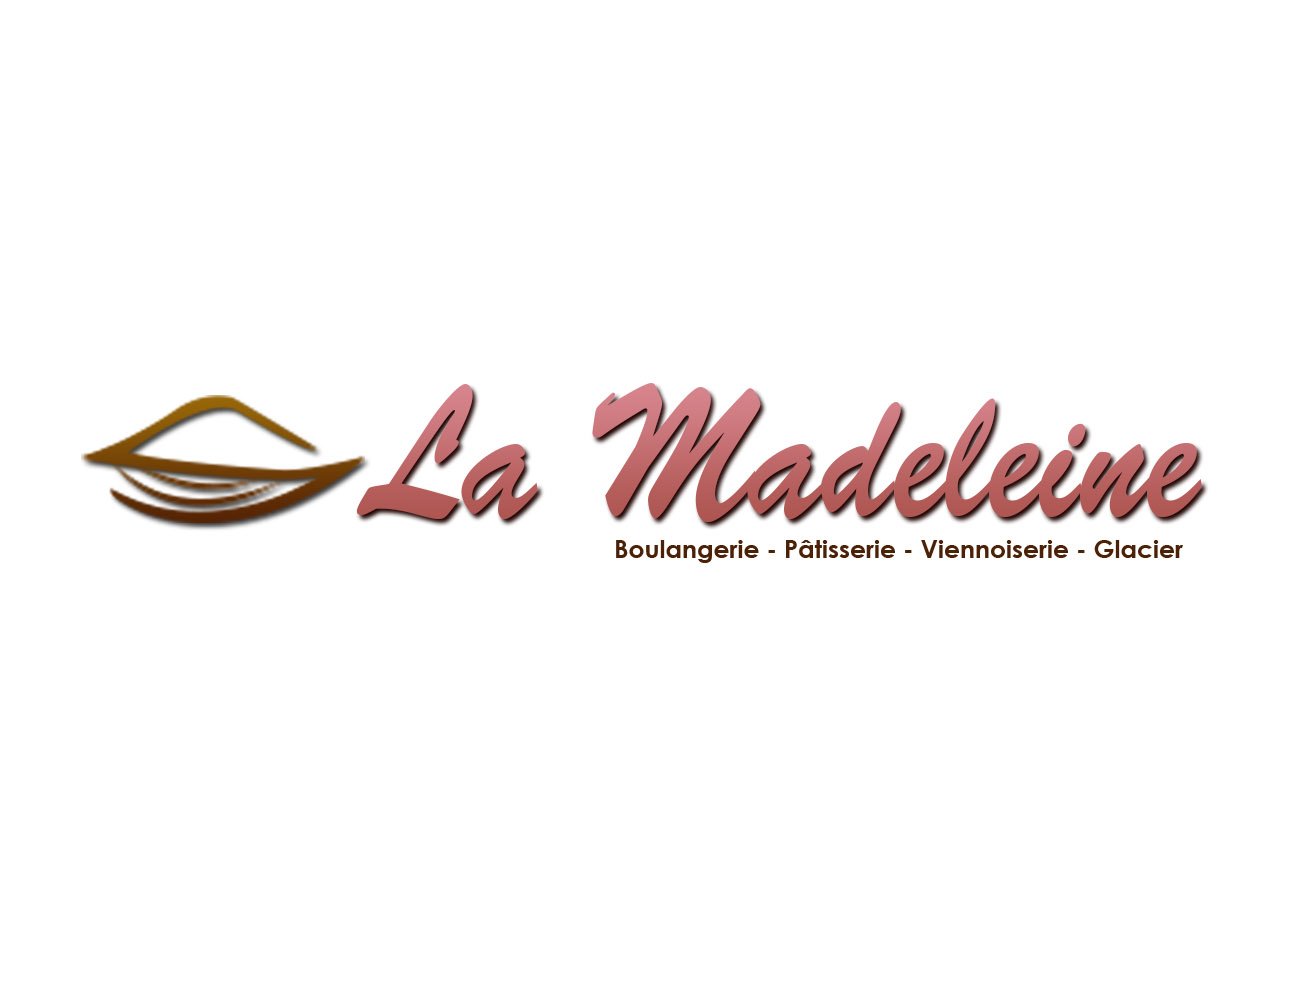 Votre pâtisserie la madeleine
Mariste 2 villa Y 168
Tél: 77 100-85-22